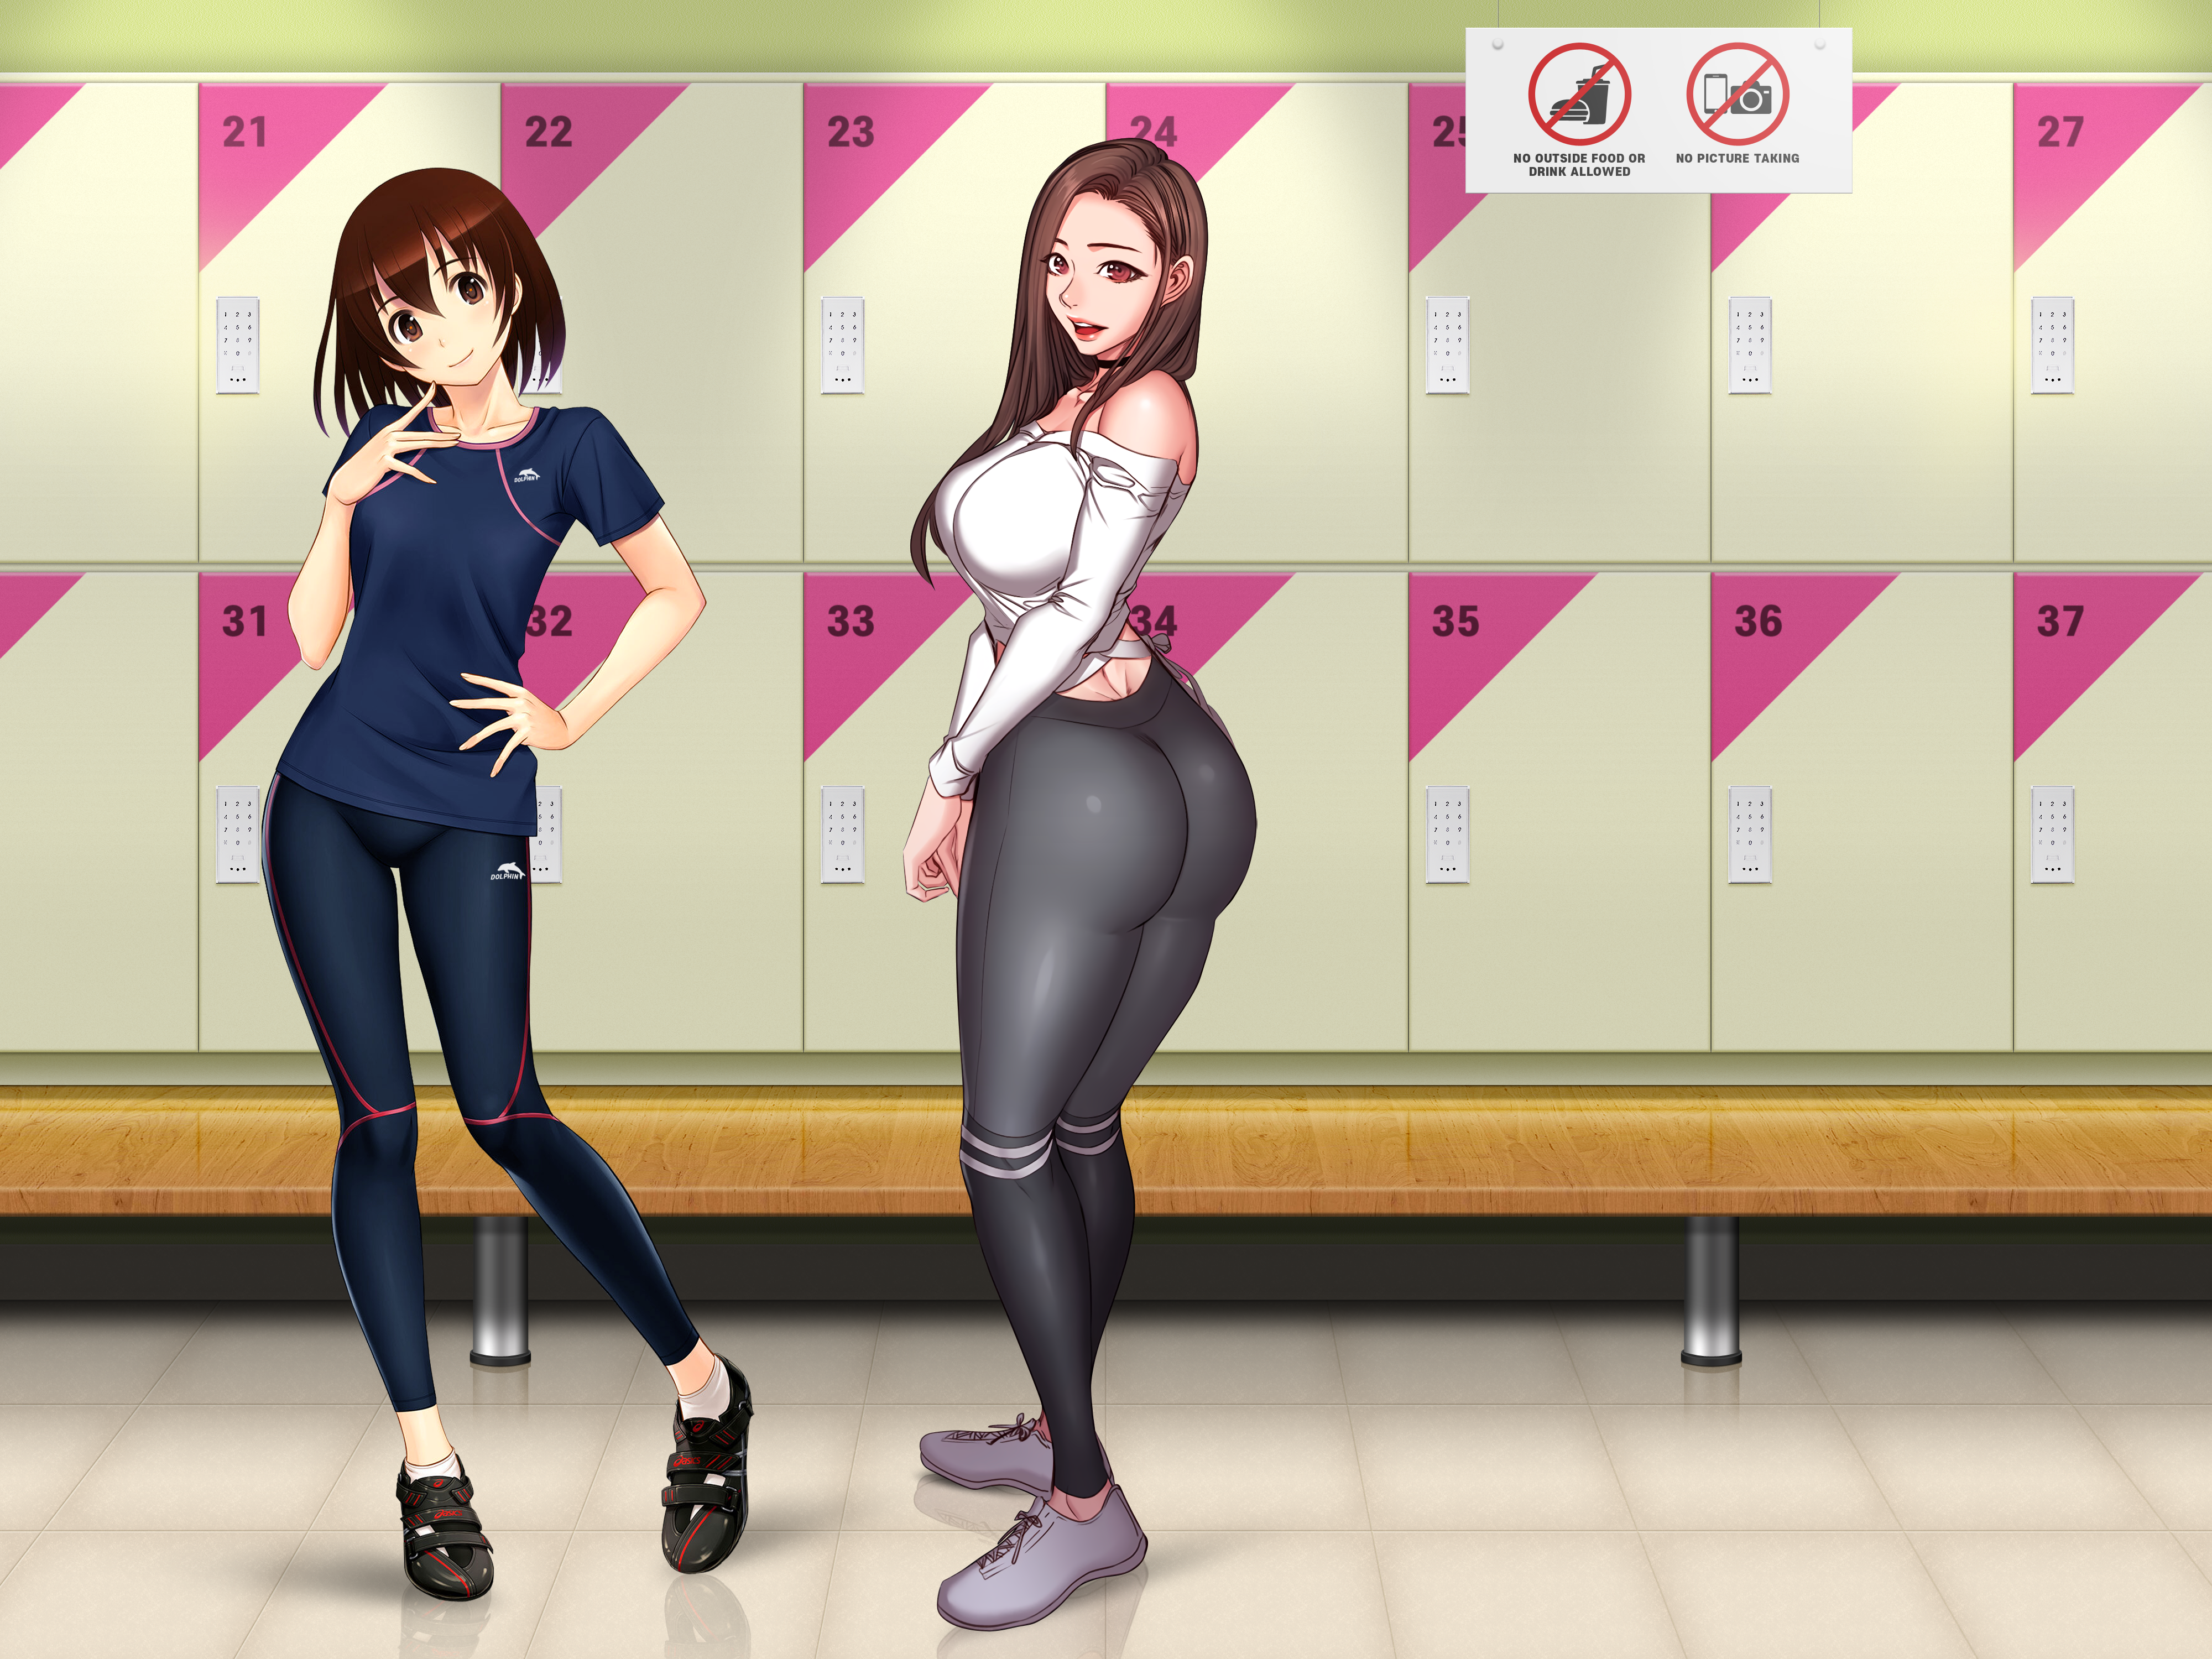 Anime 4000x3000 locker room artwork anime anime girls